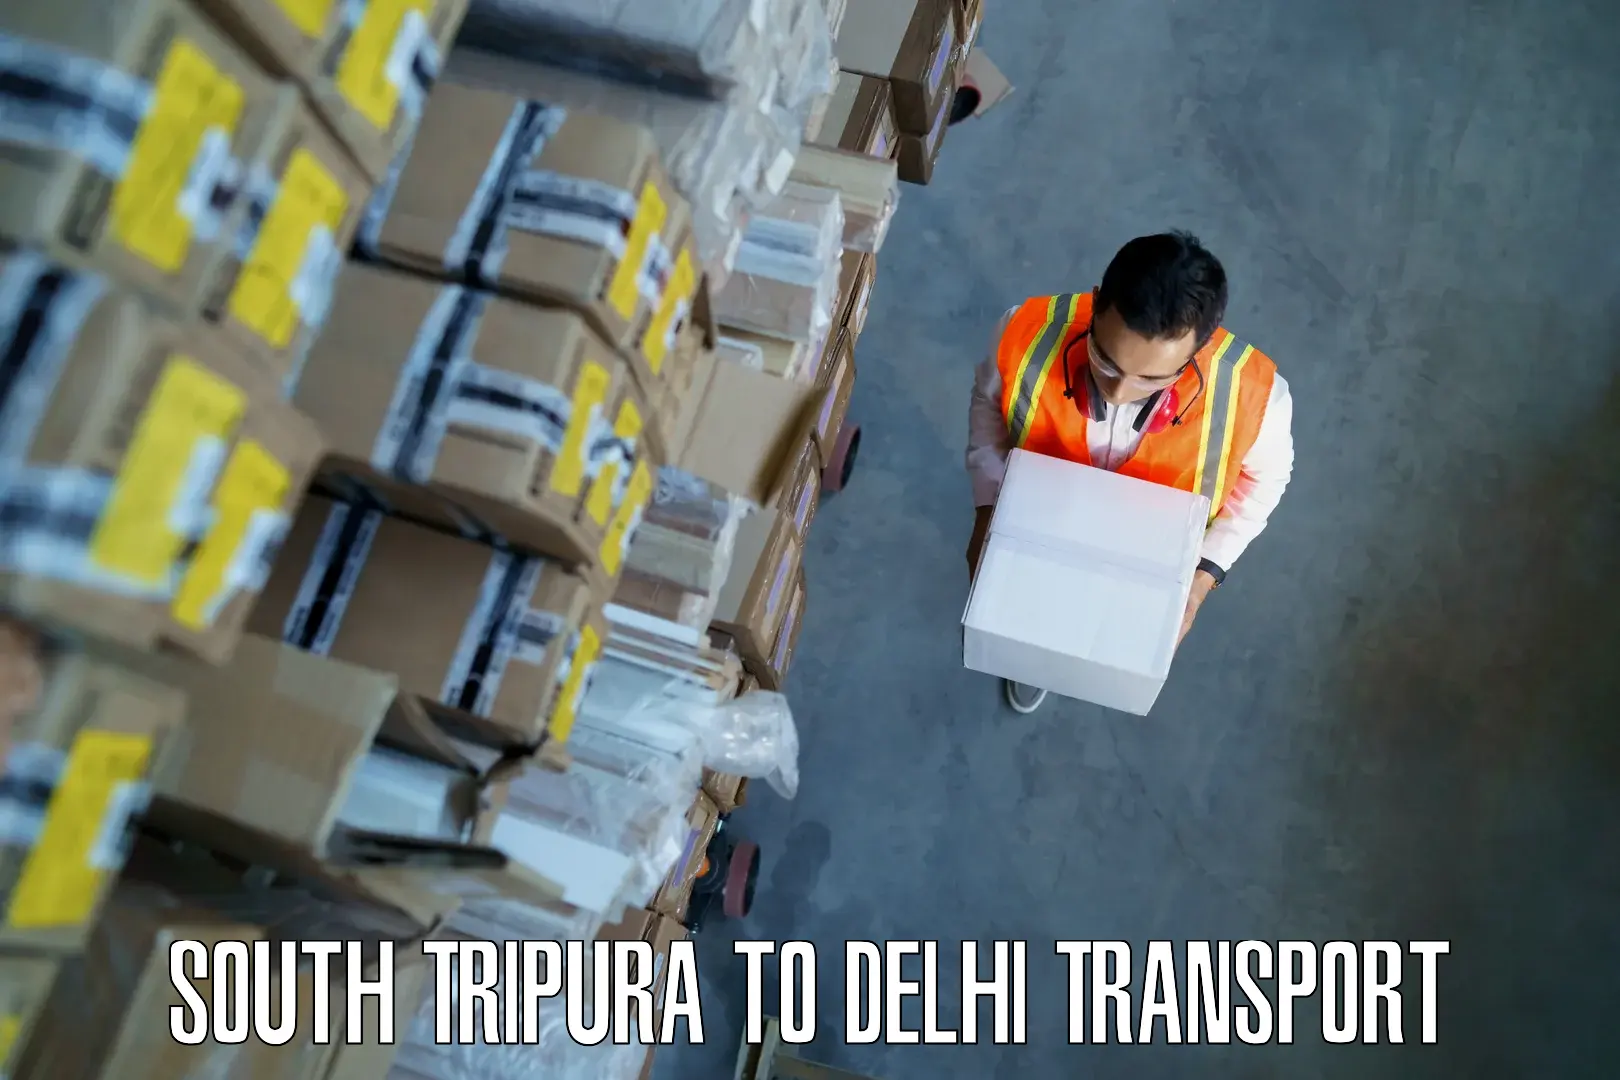 Air cargo transport services South Tripura to Delhi